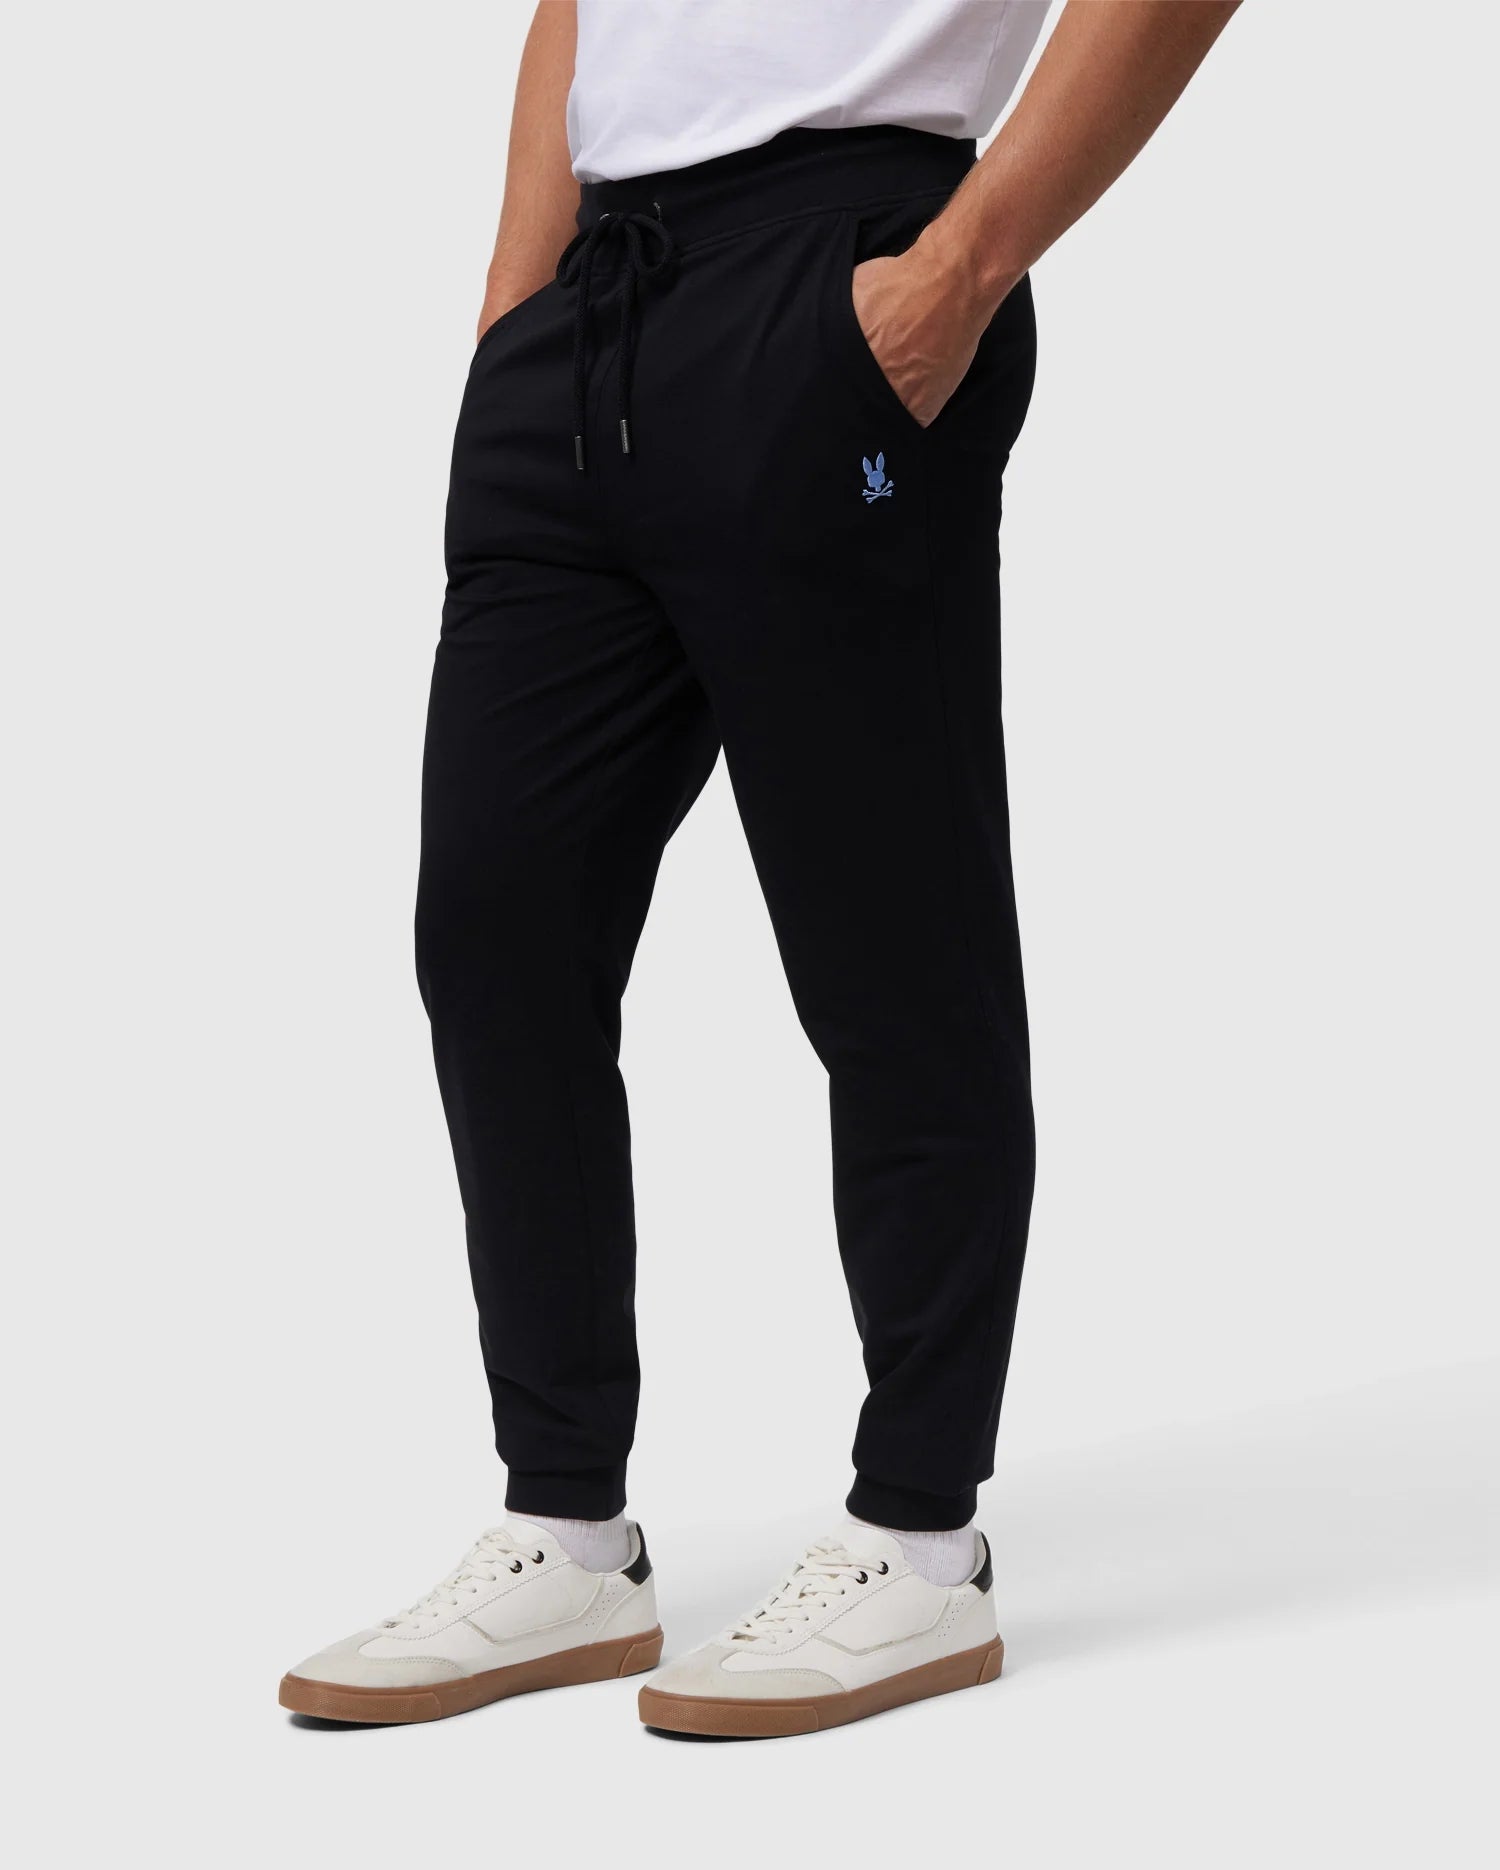 Polo Ralph Lauren Double-Knit Jogger Pants  Knit jogger pants, Comfortable  hoodies, Pants for women